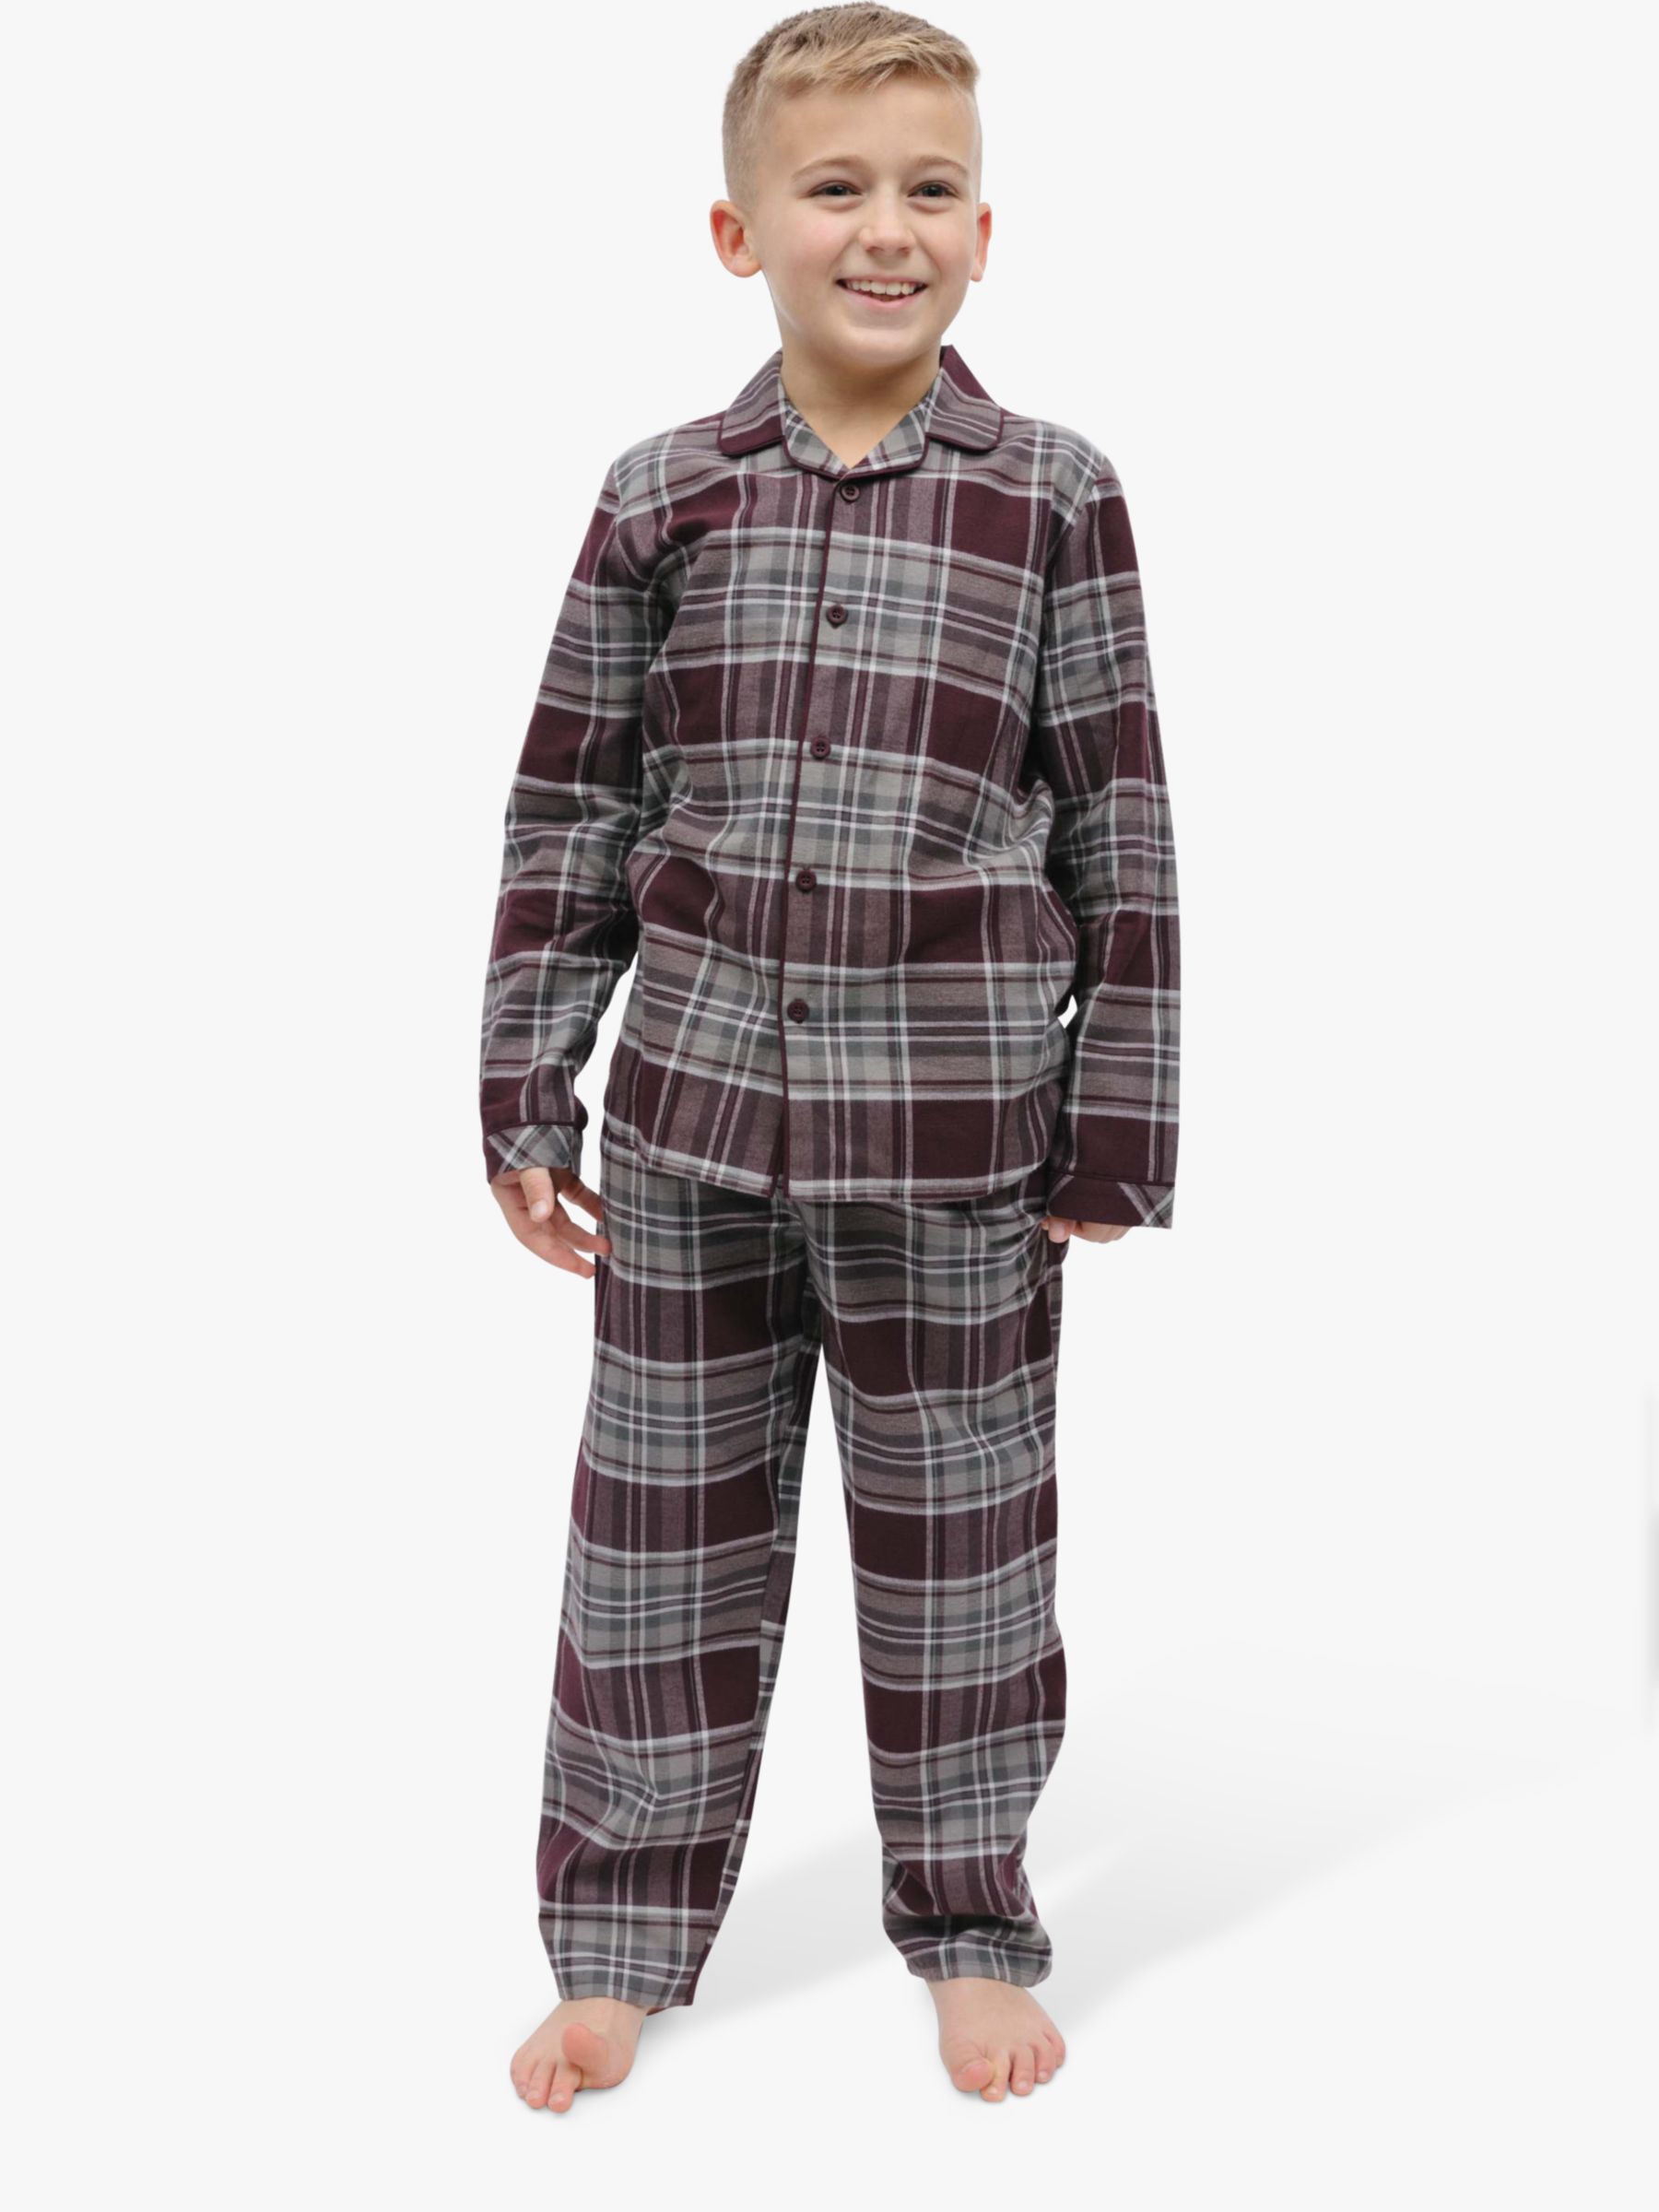 Minijammies Kids' Spencer Check Long Sleeve Pyjamas, Burgundy, 2-3 years